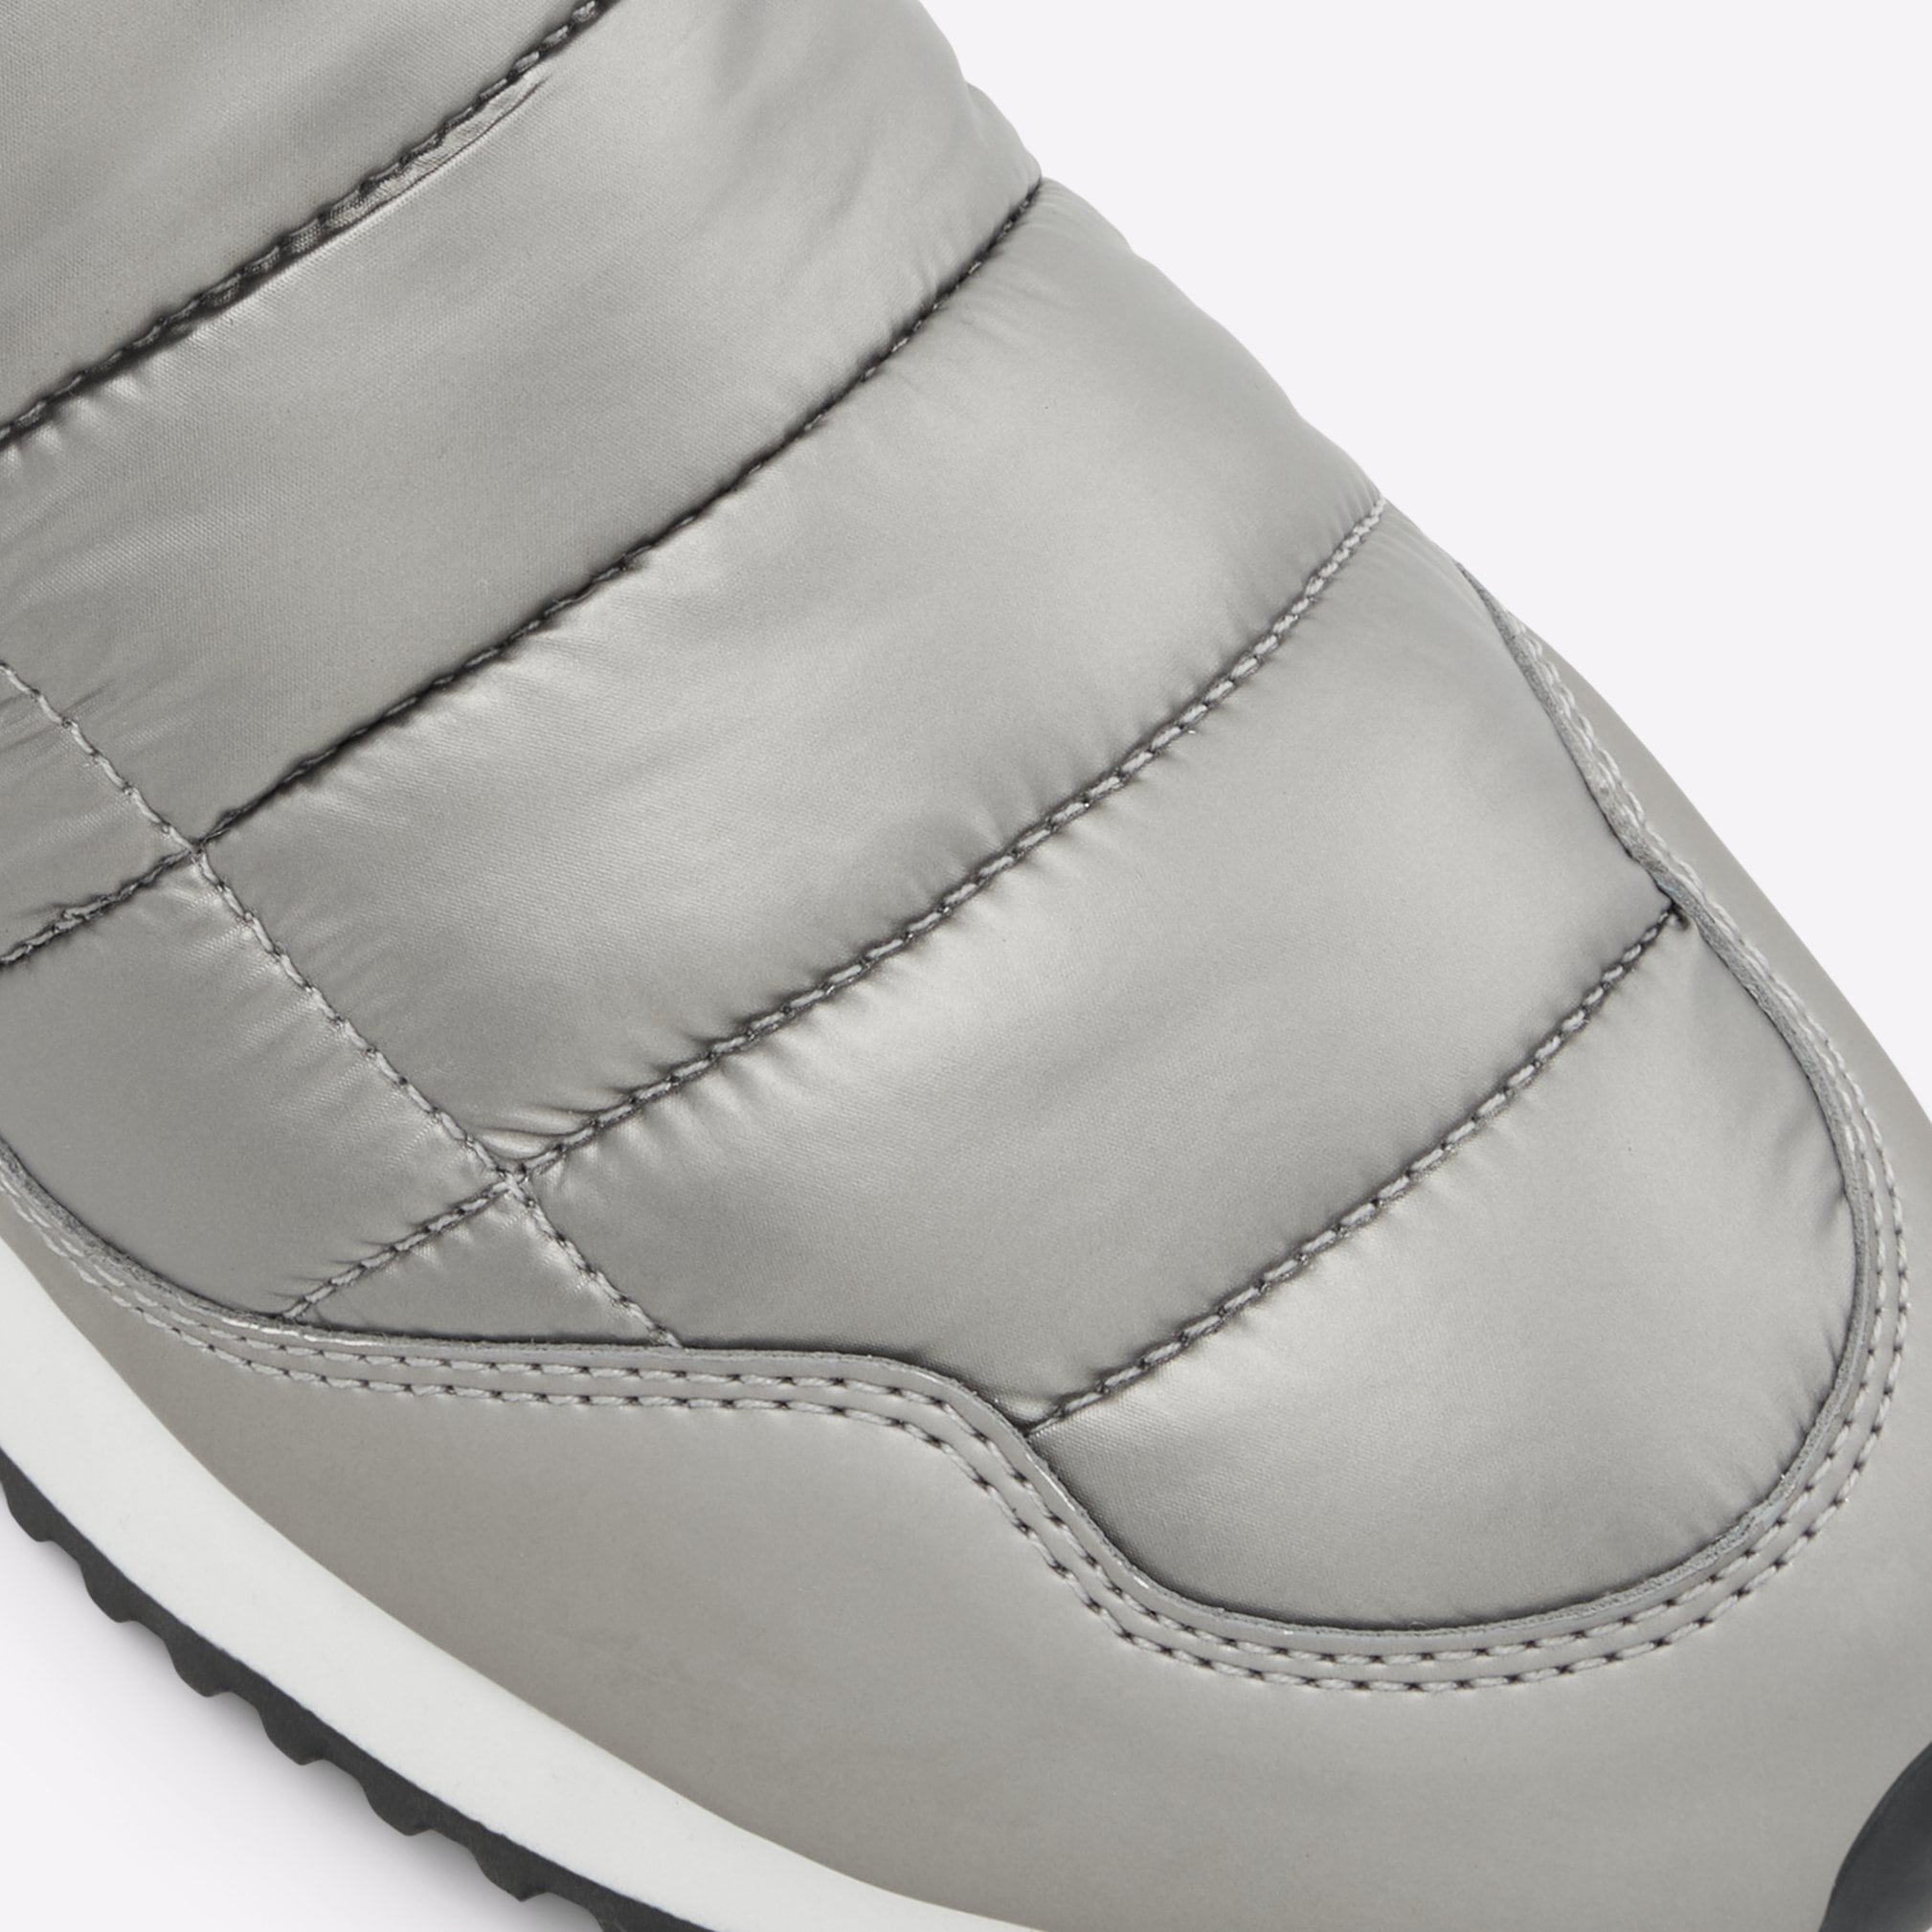 Pufferwalk Women Shoes - Silver - ALDO KSA